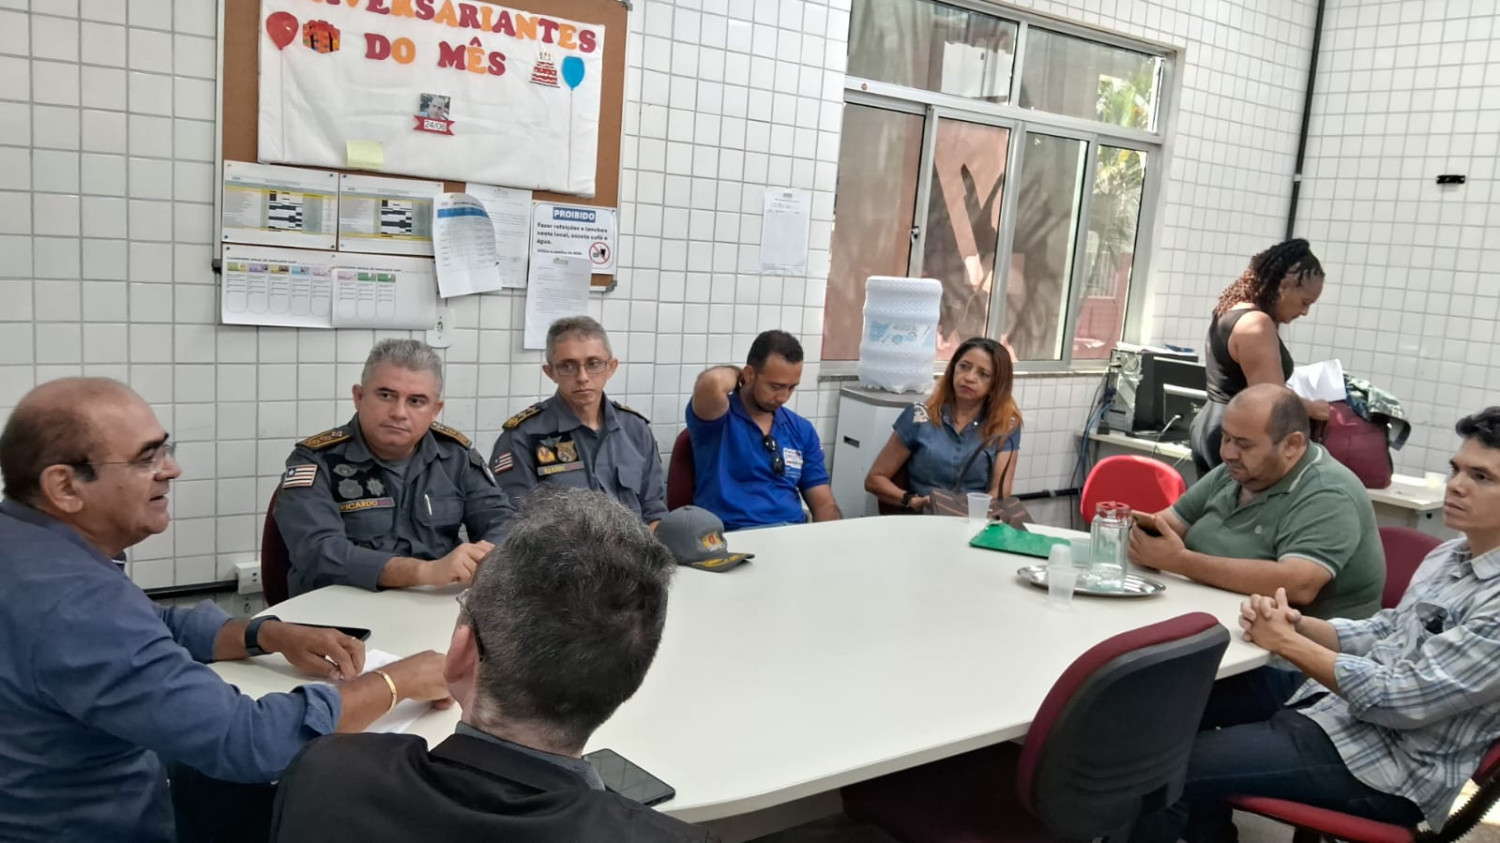 SENAI Maranhão firma parceria com Secretaria de Segurança Pública